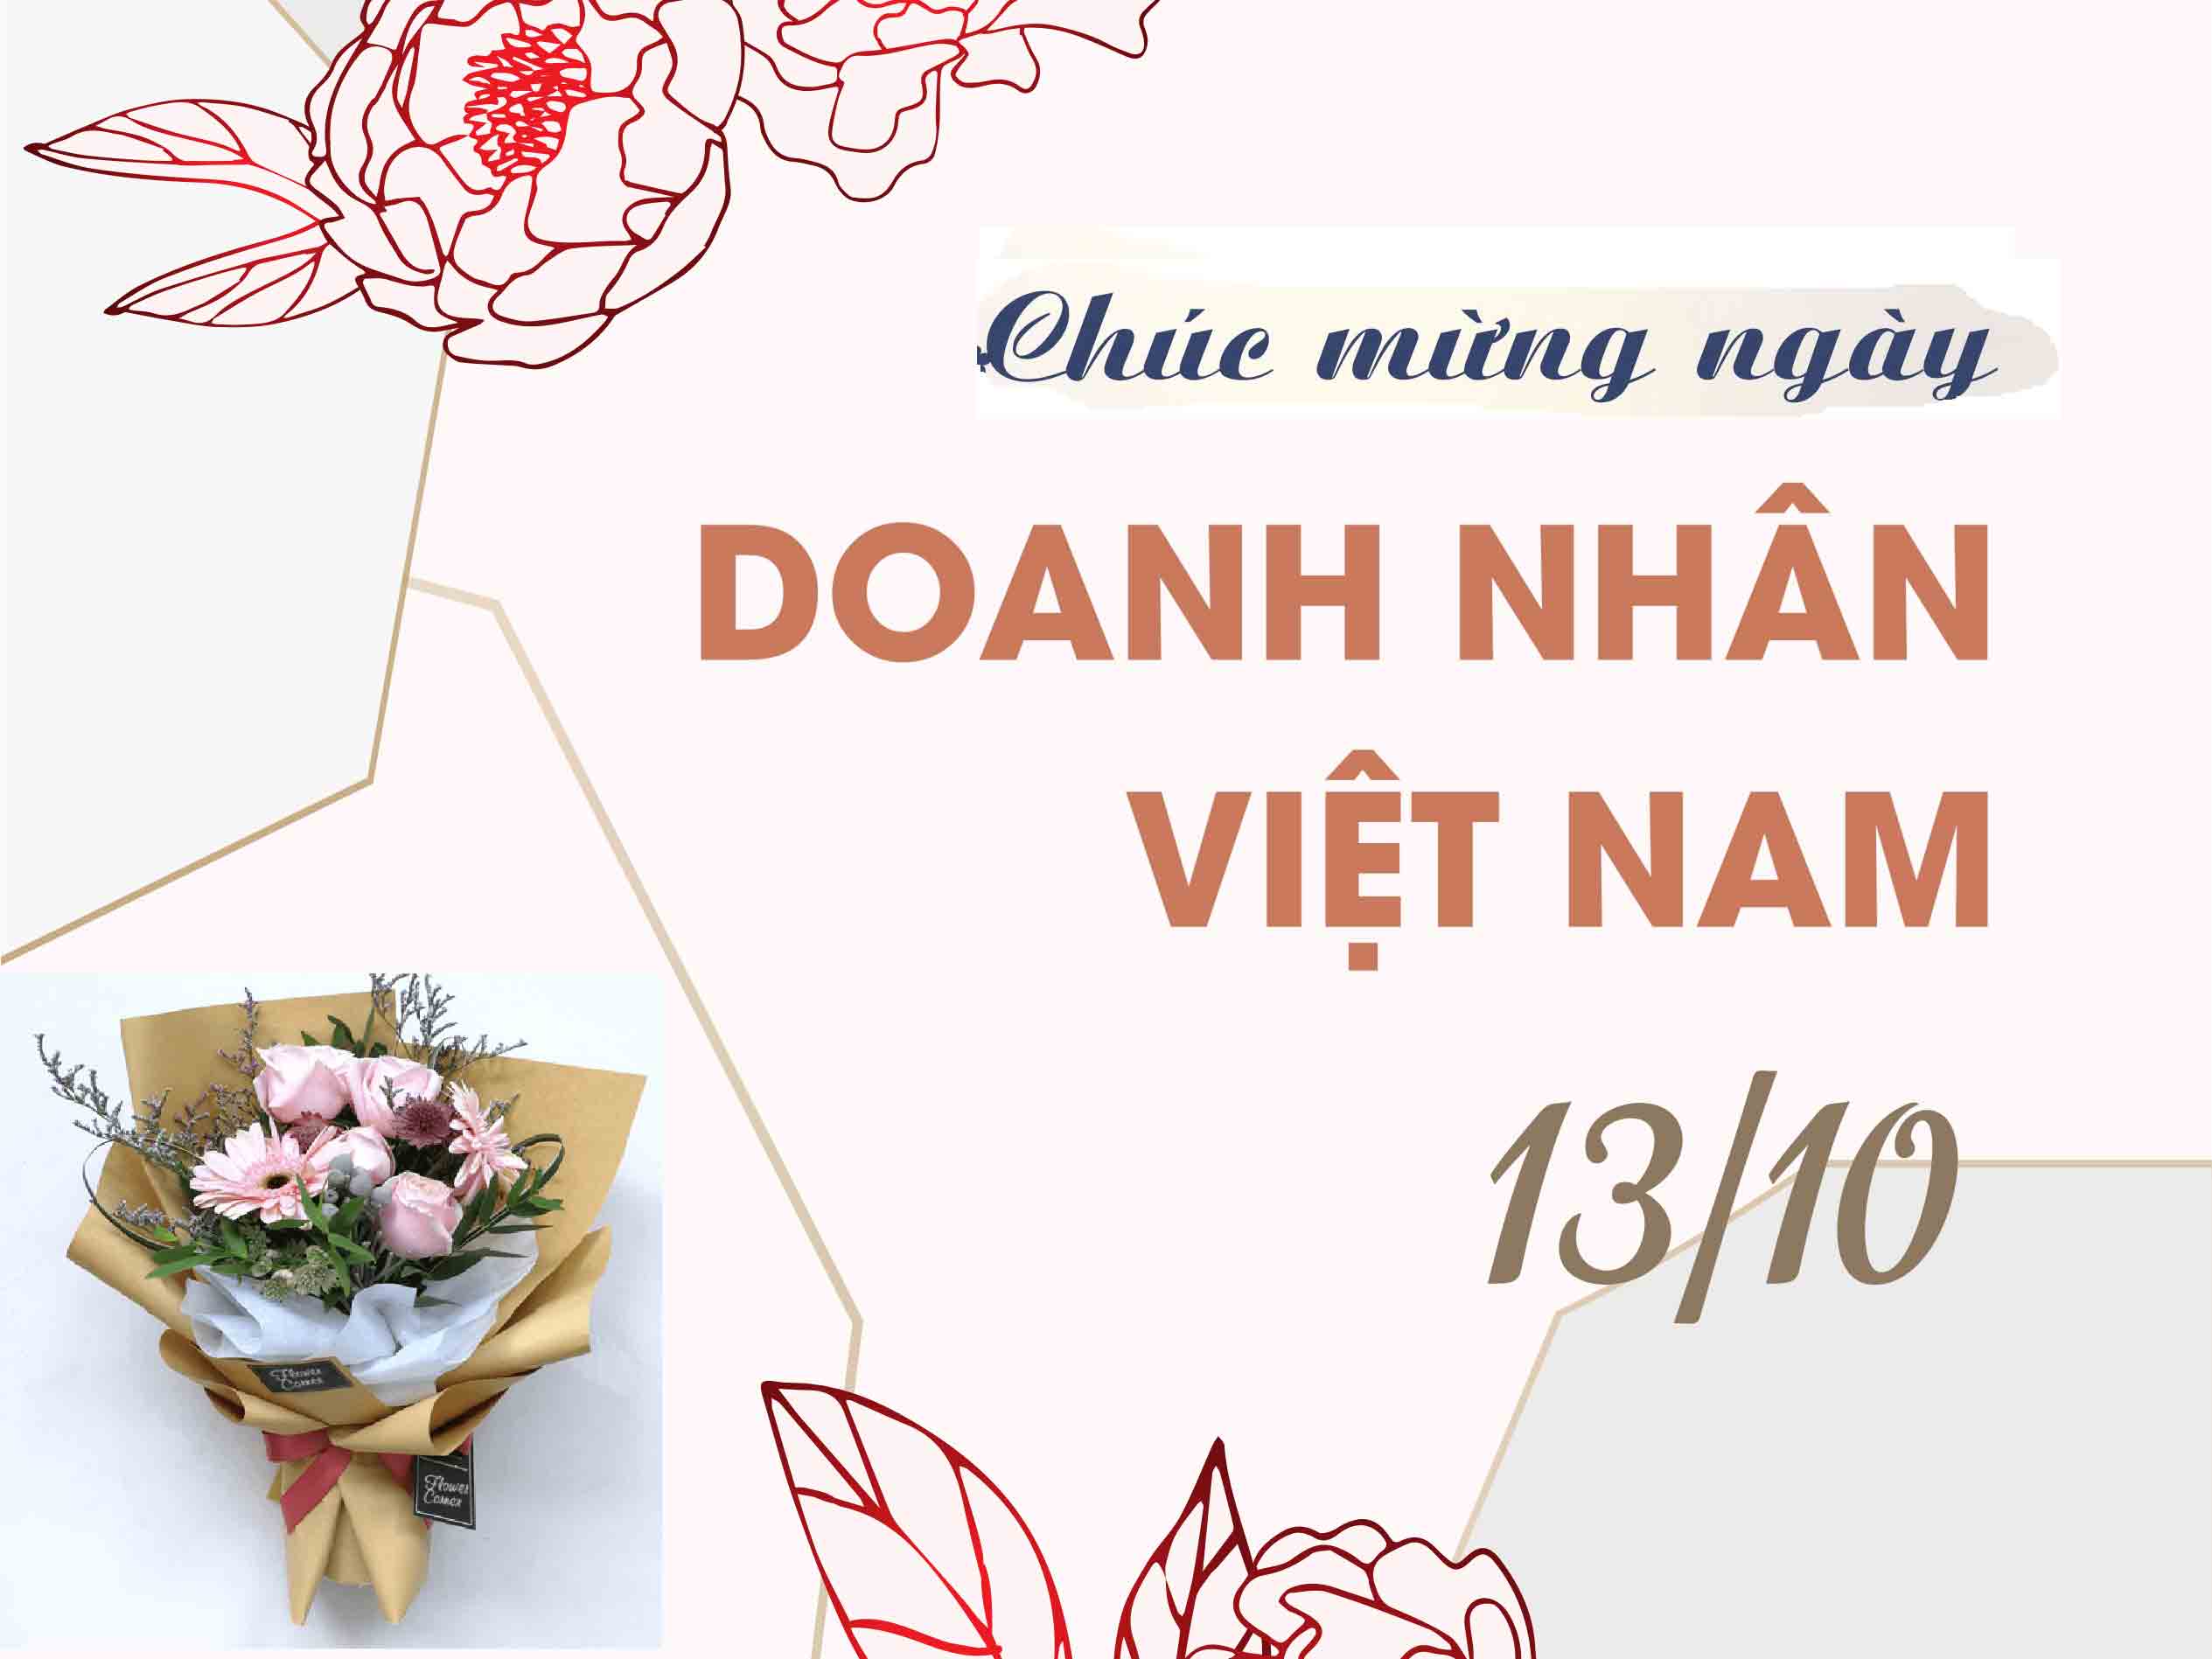  lời chúc hay mừng ngày Doanh nhân Việt Nam 